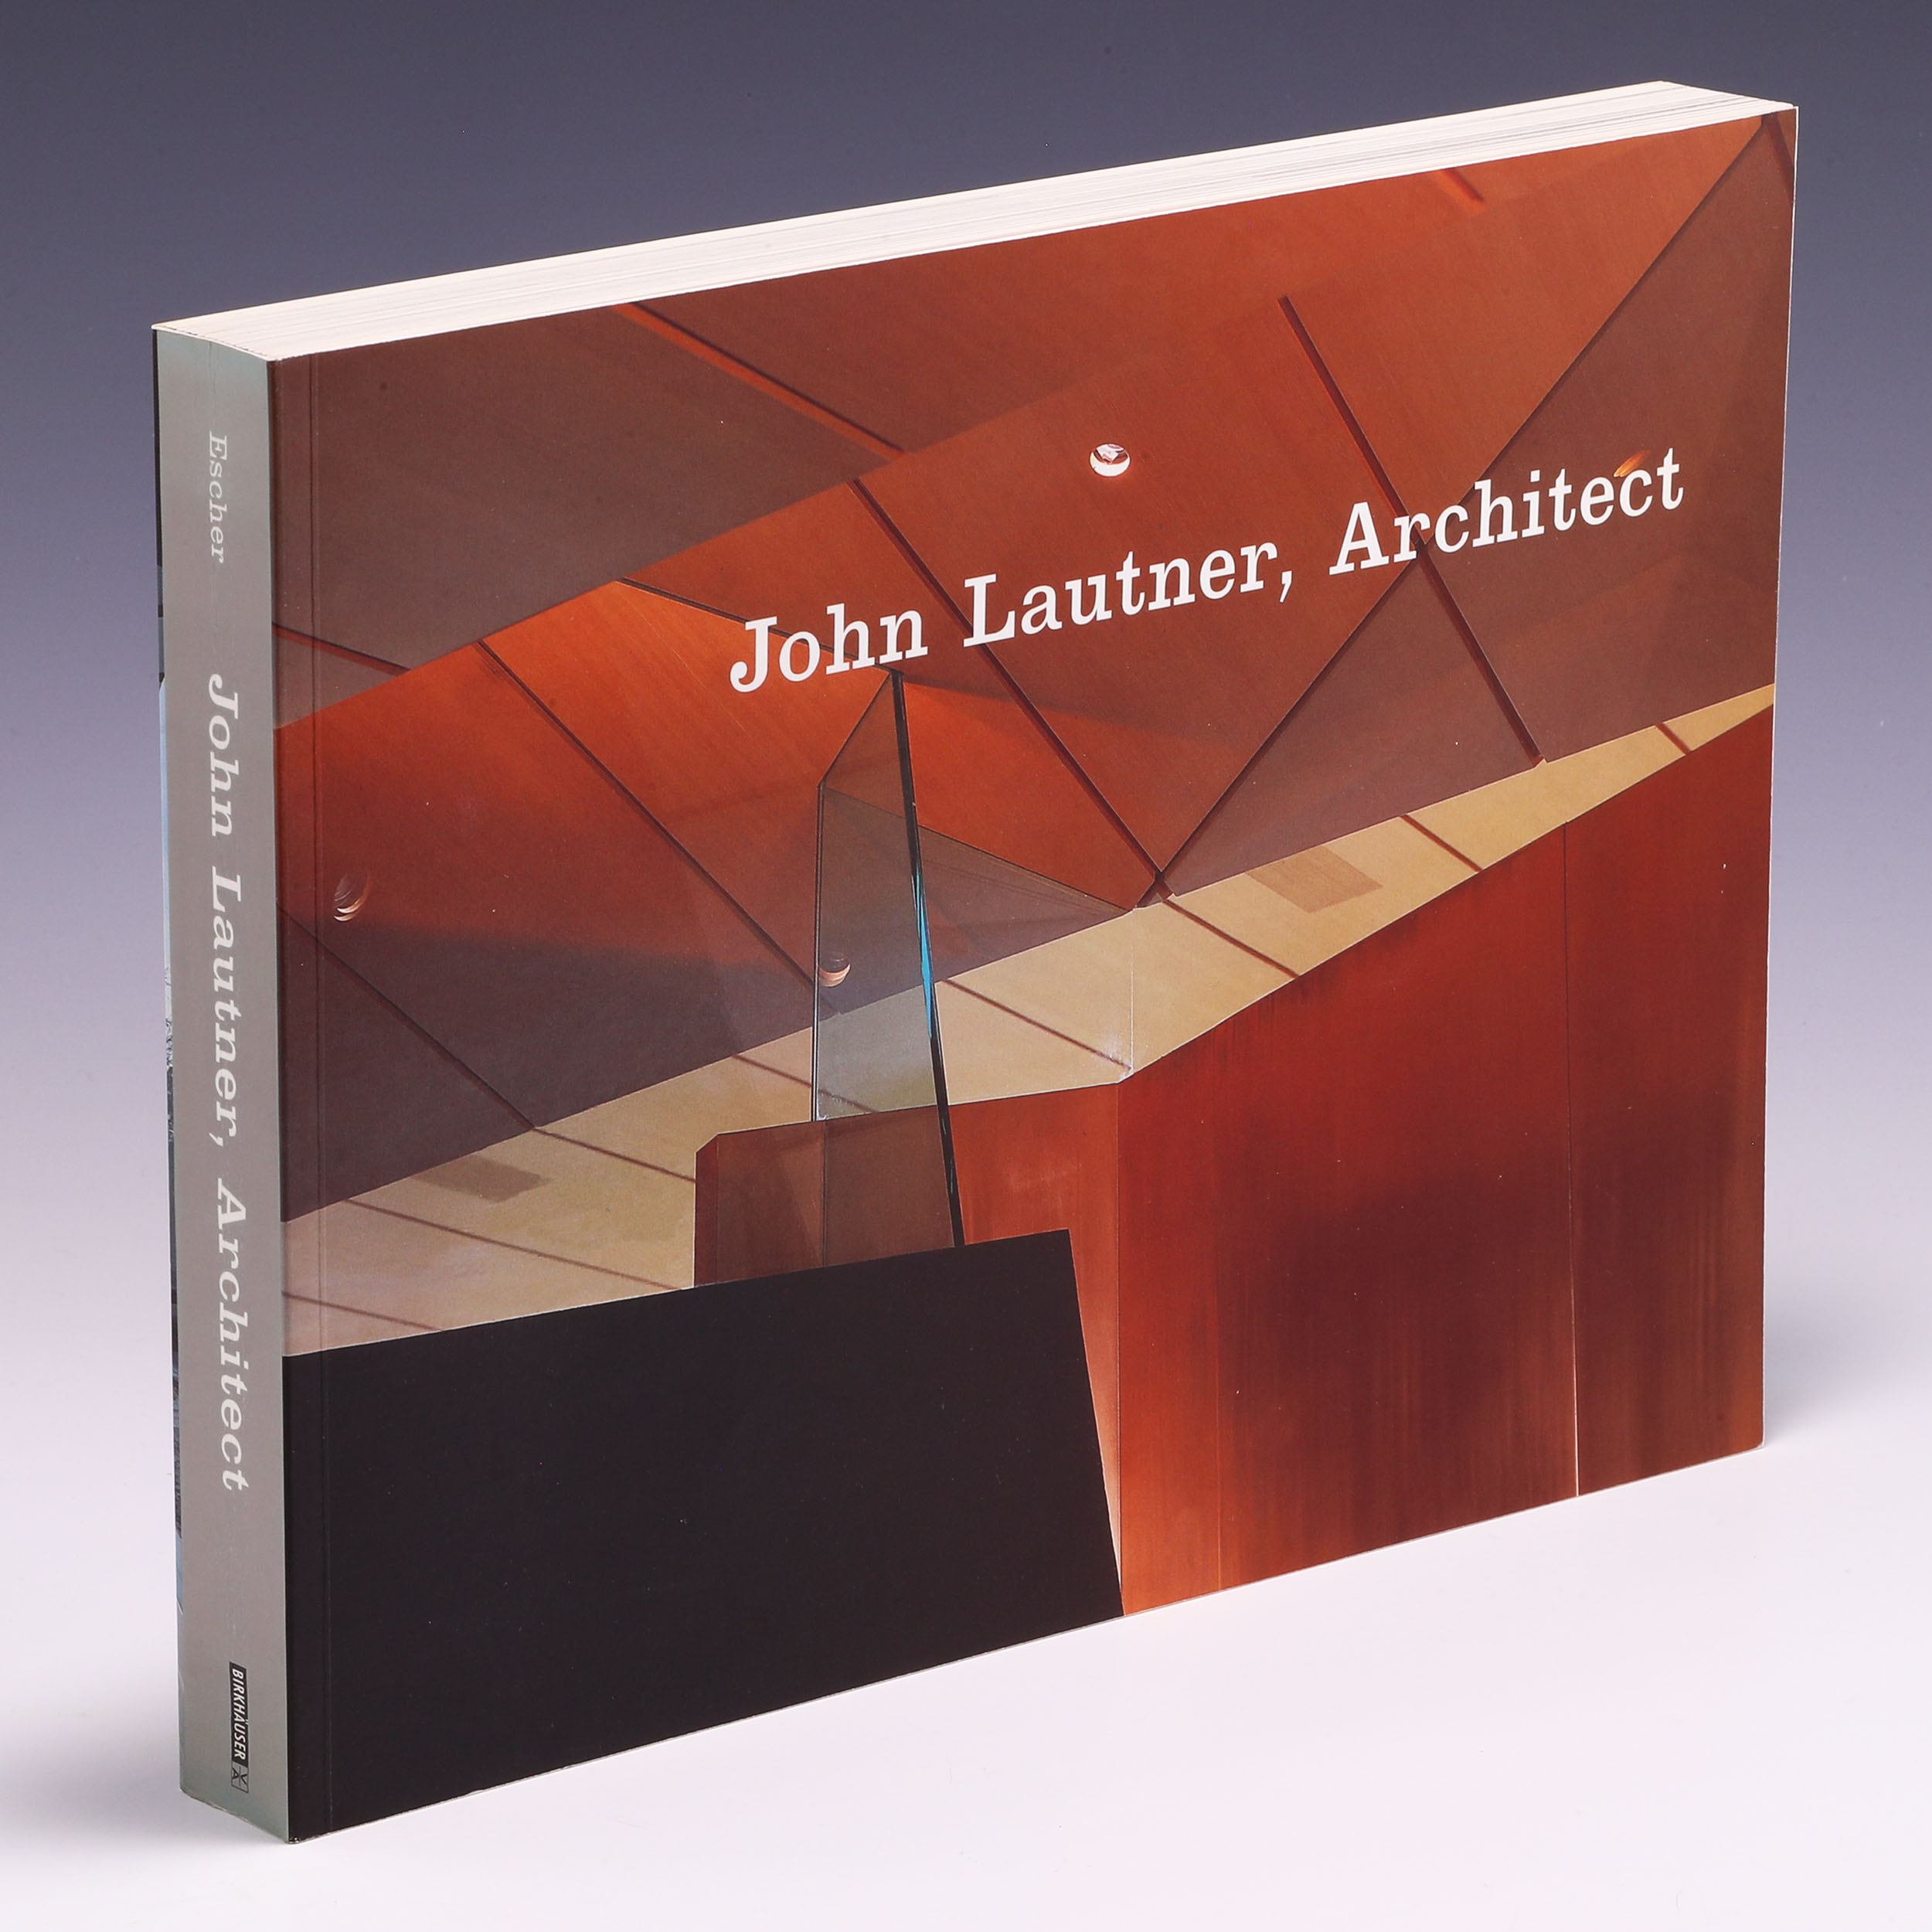 John Lautner, Architect - Frank Escher